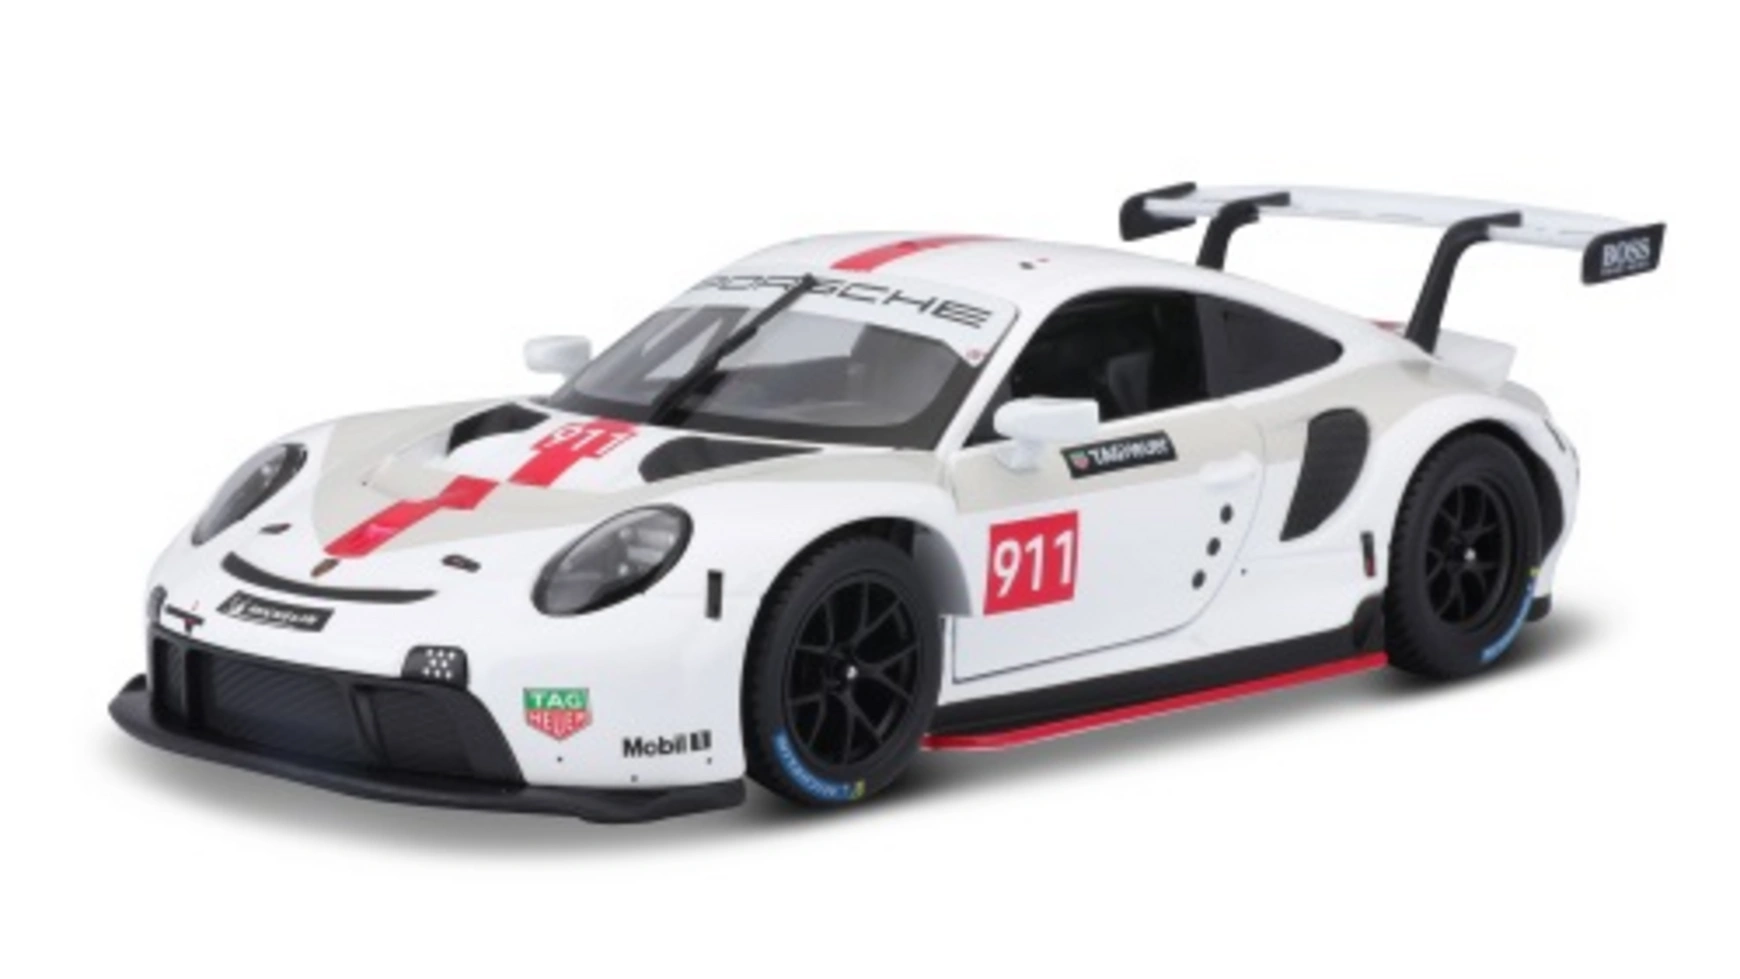 Bburago Гонка Porsche 911 RSR GT 1:24 (2020) bburago 1 24 new porsche 911 rsr simulation alloy car model collect gifts toy boy toys